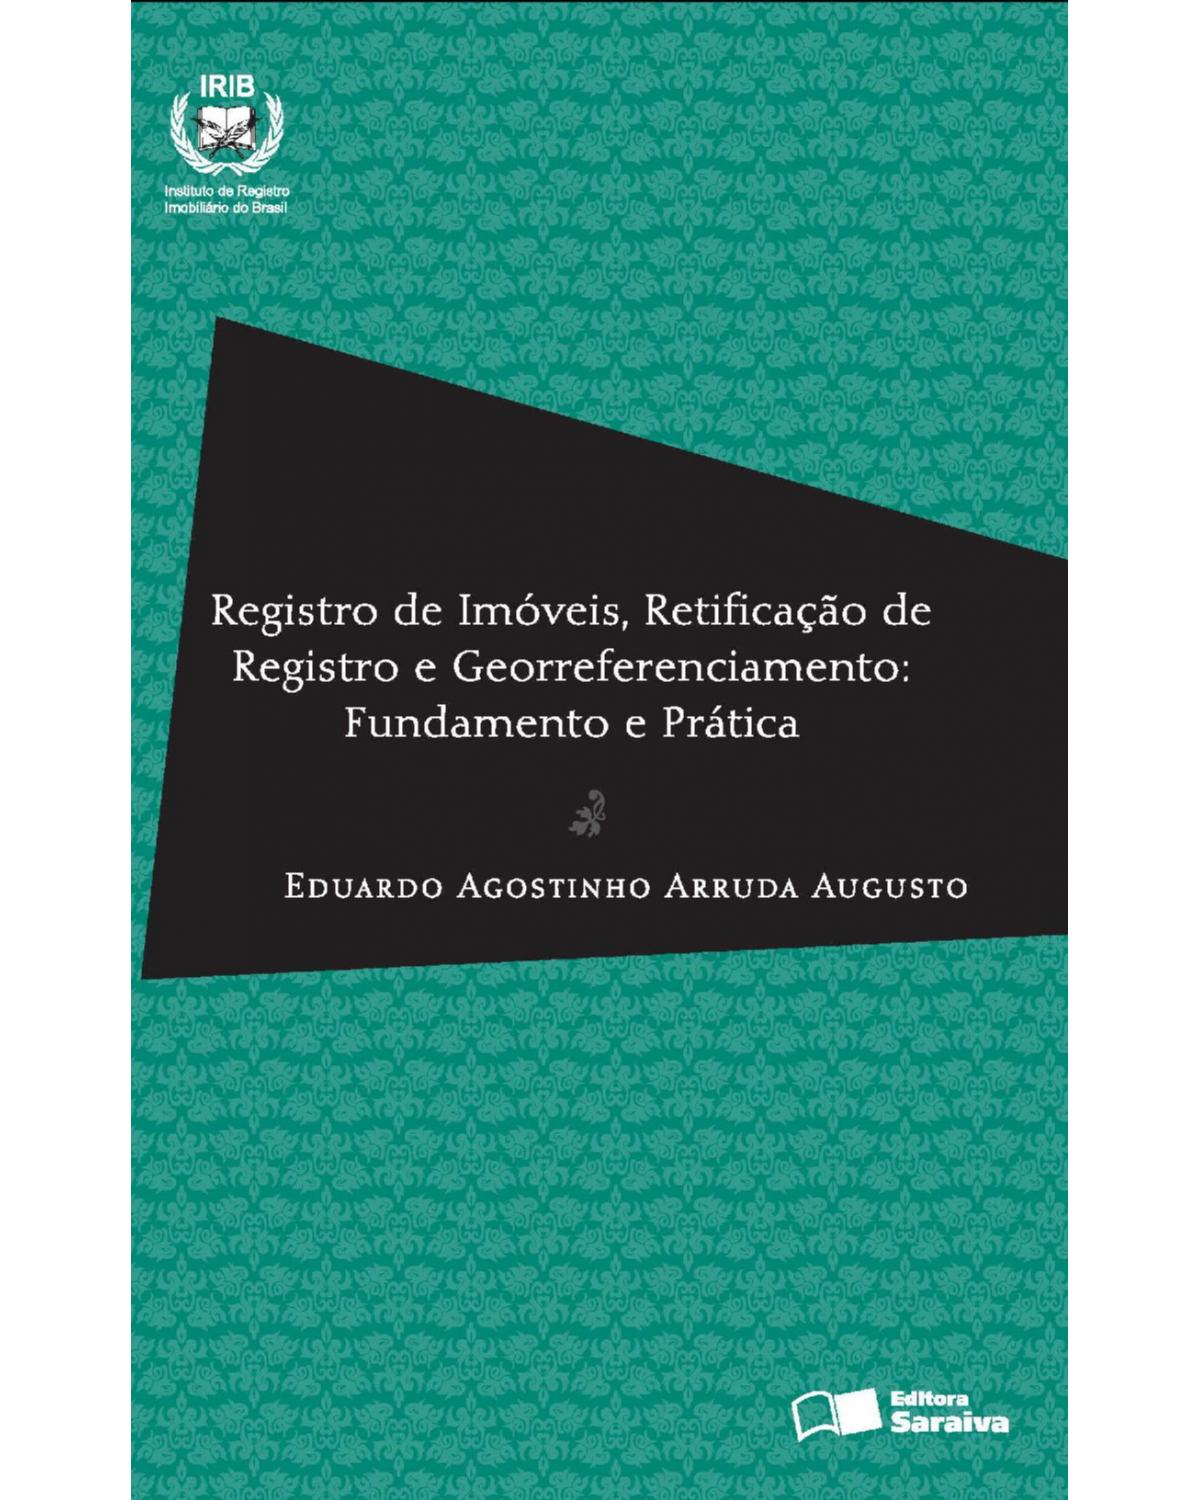 Registro de imóveis, retificação de registros e georreferenciamento - fundamento e prática - 1ª Edição | 2013